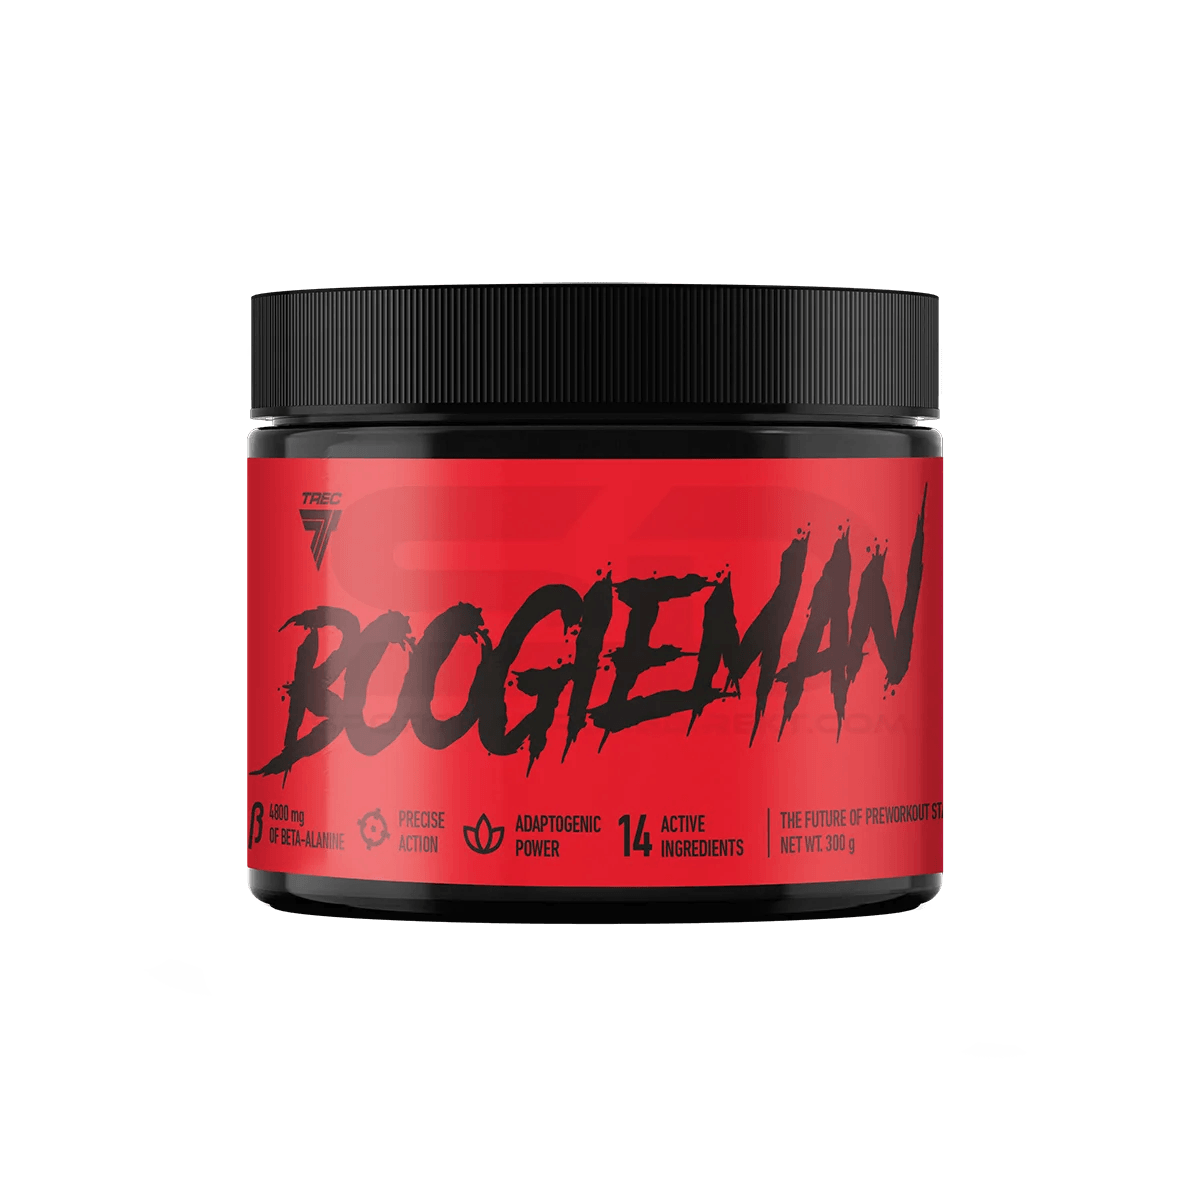 TREC BOOGIEMAN Booster 300g - Supplement Support